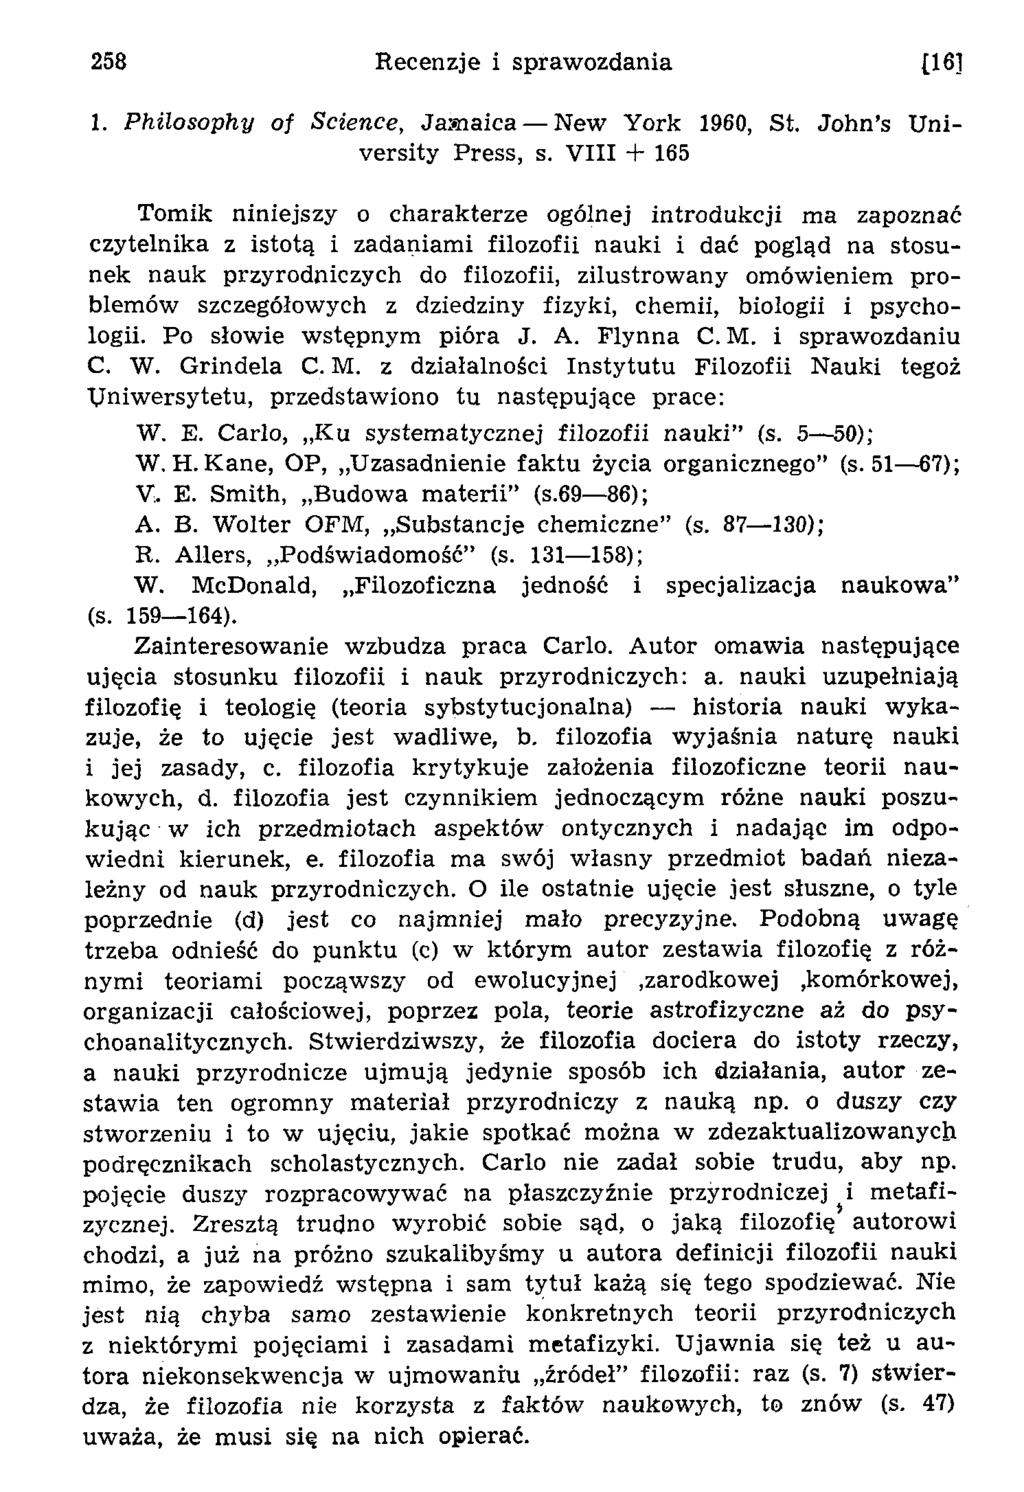 1. Philosophy of Science, Jam aica N ew York 1960, St. John s U n i versity Press, s.